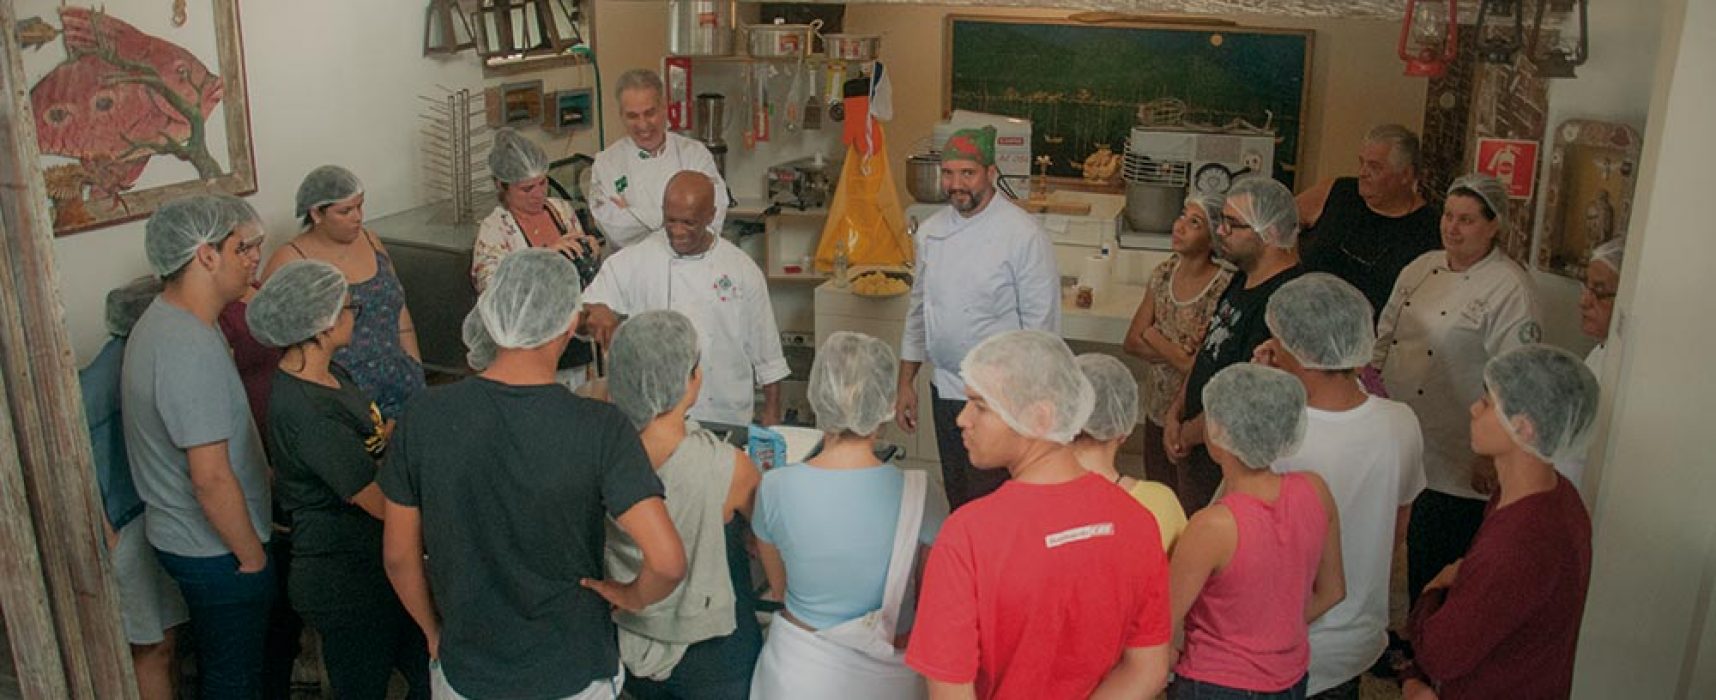 Projeto de formação social dos Cozinheiros Sem Fronteiras teve nova etapa em Ilhabela